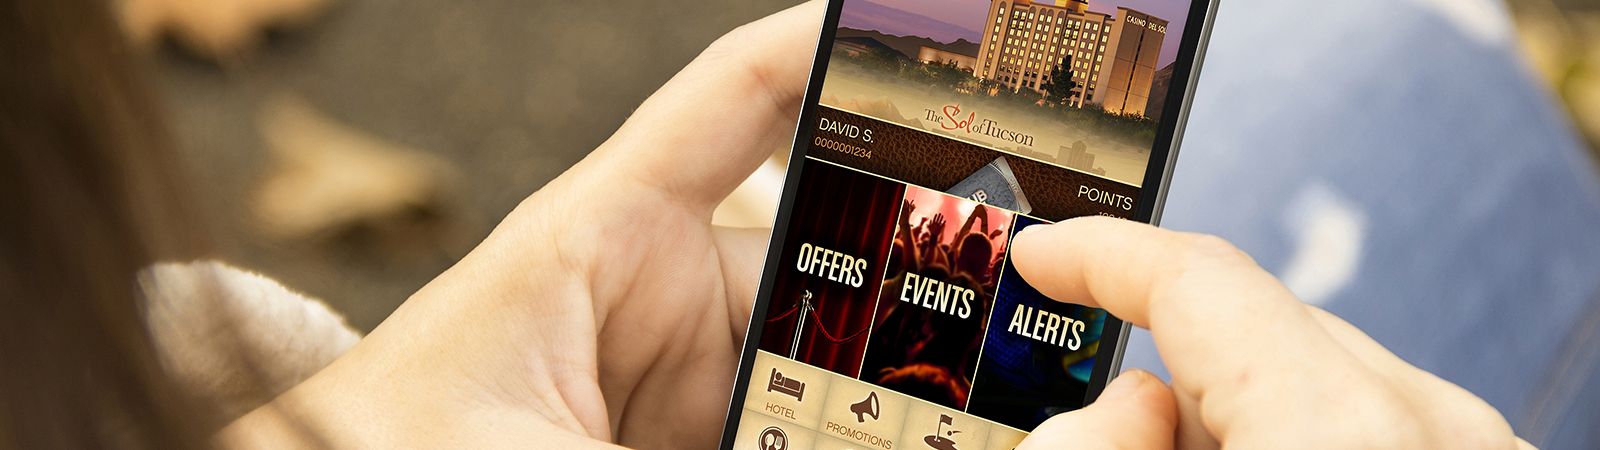 Casino Del Sol Mobile App 